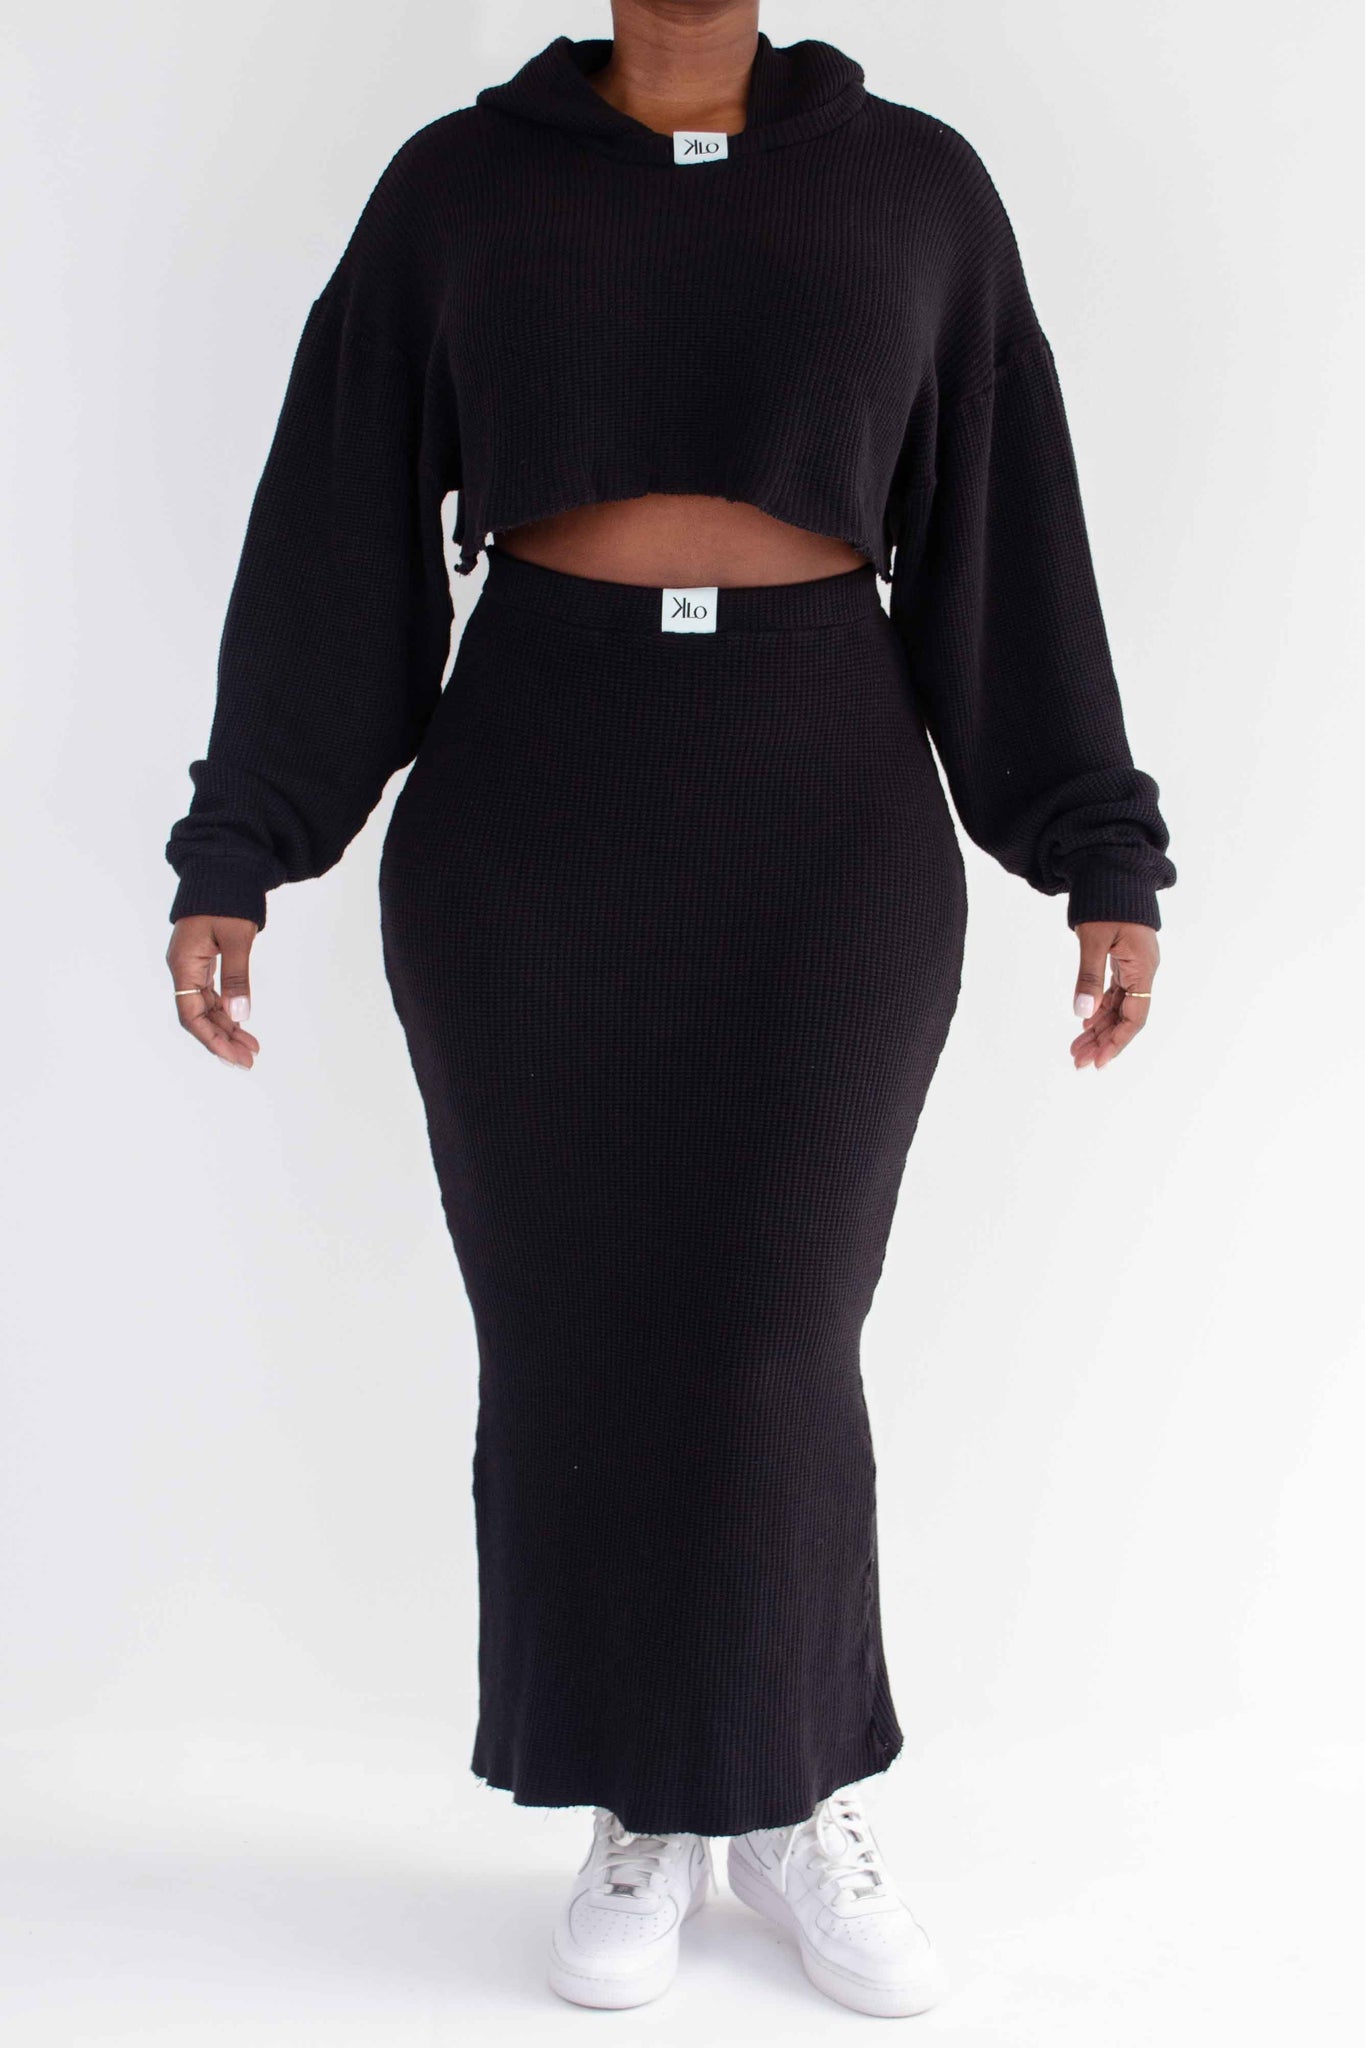 GRACIE Skirt (Black DEADSTOCK)